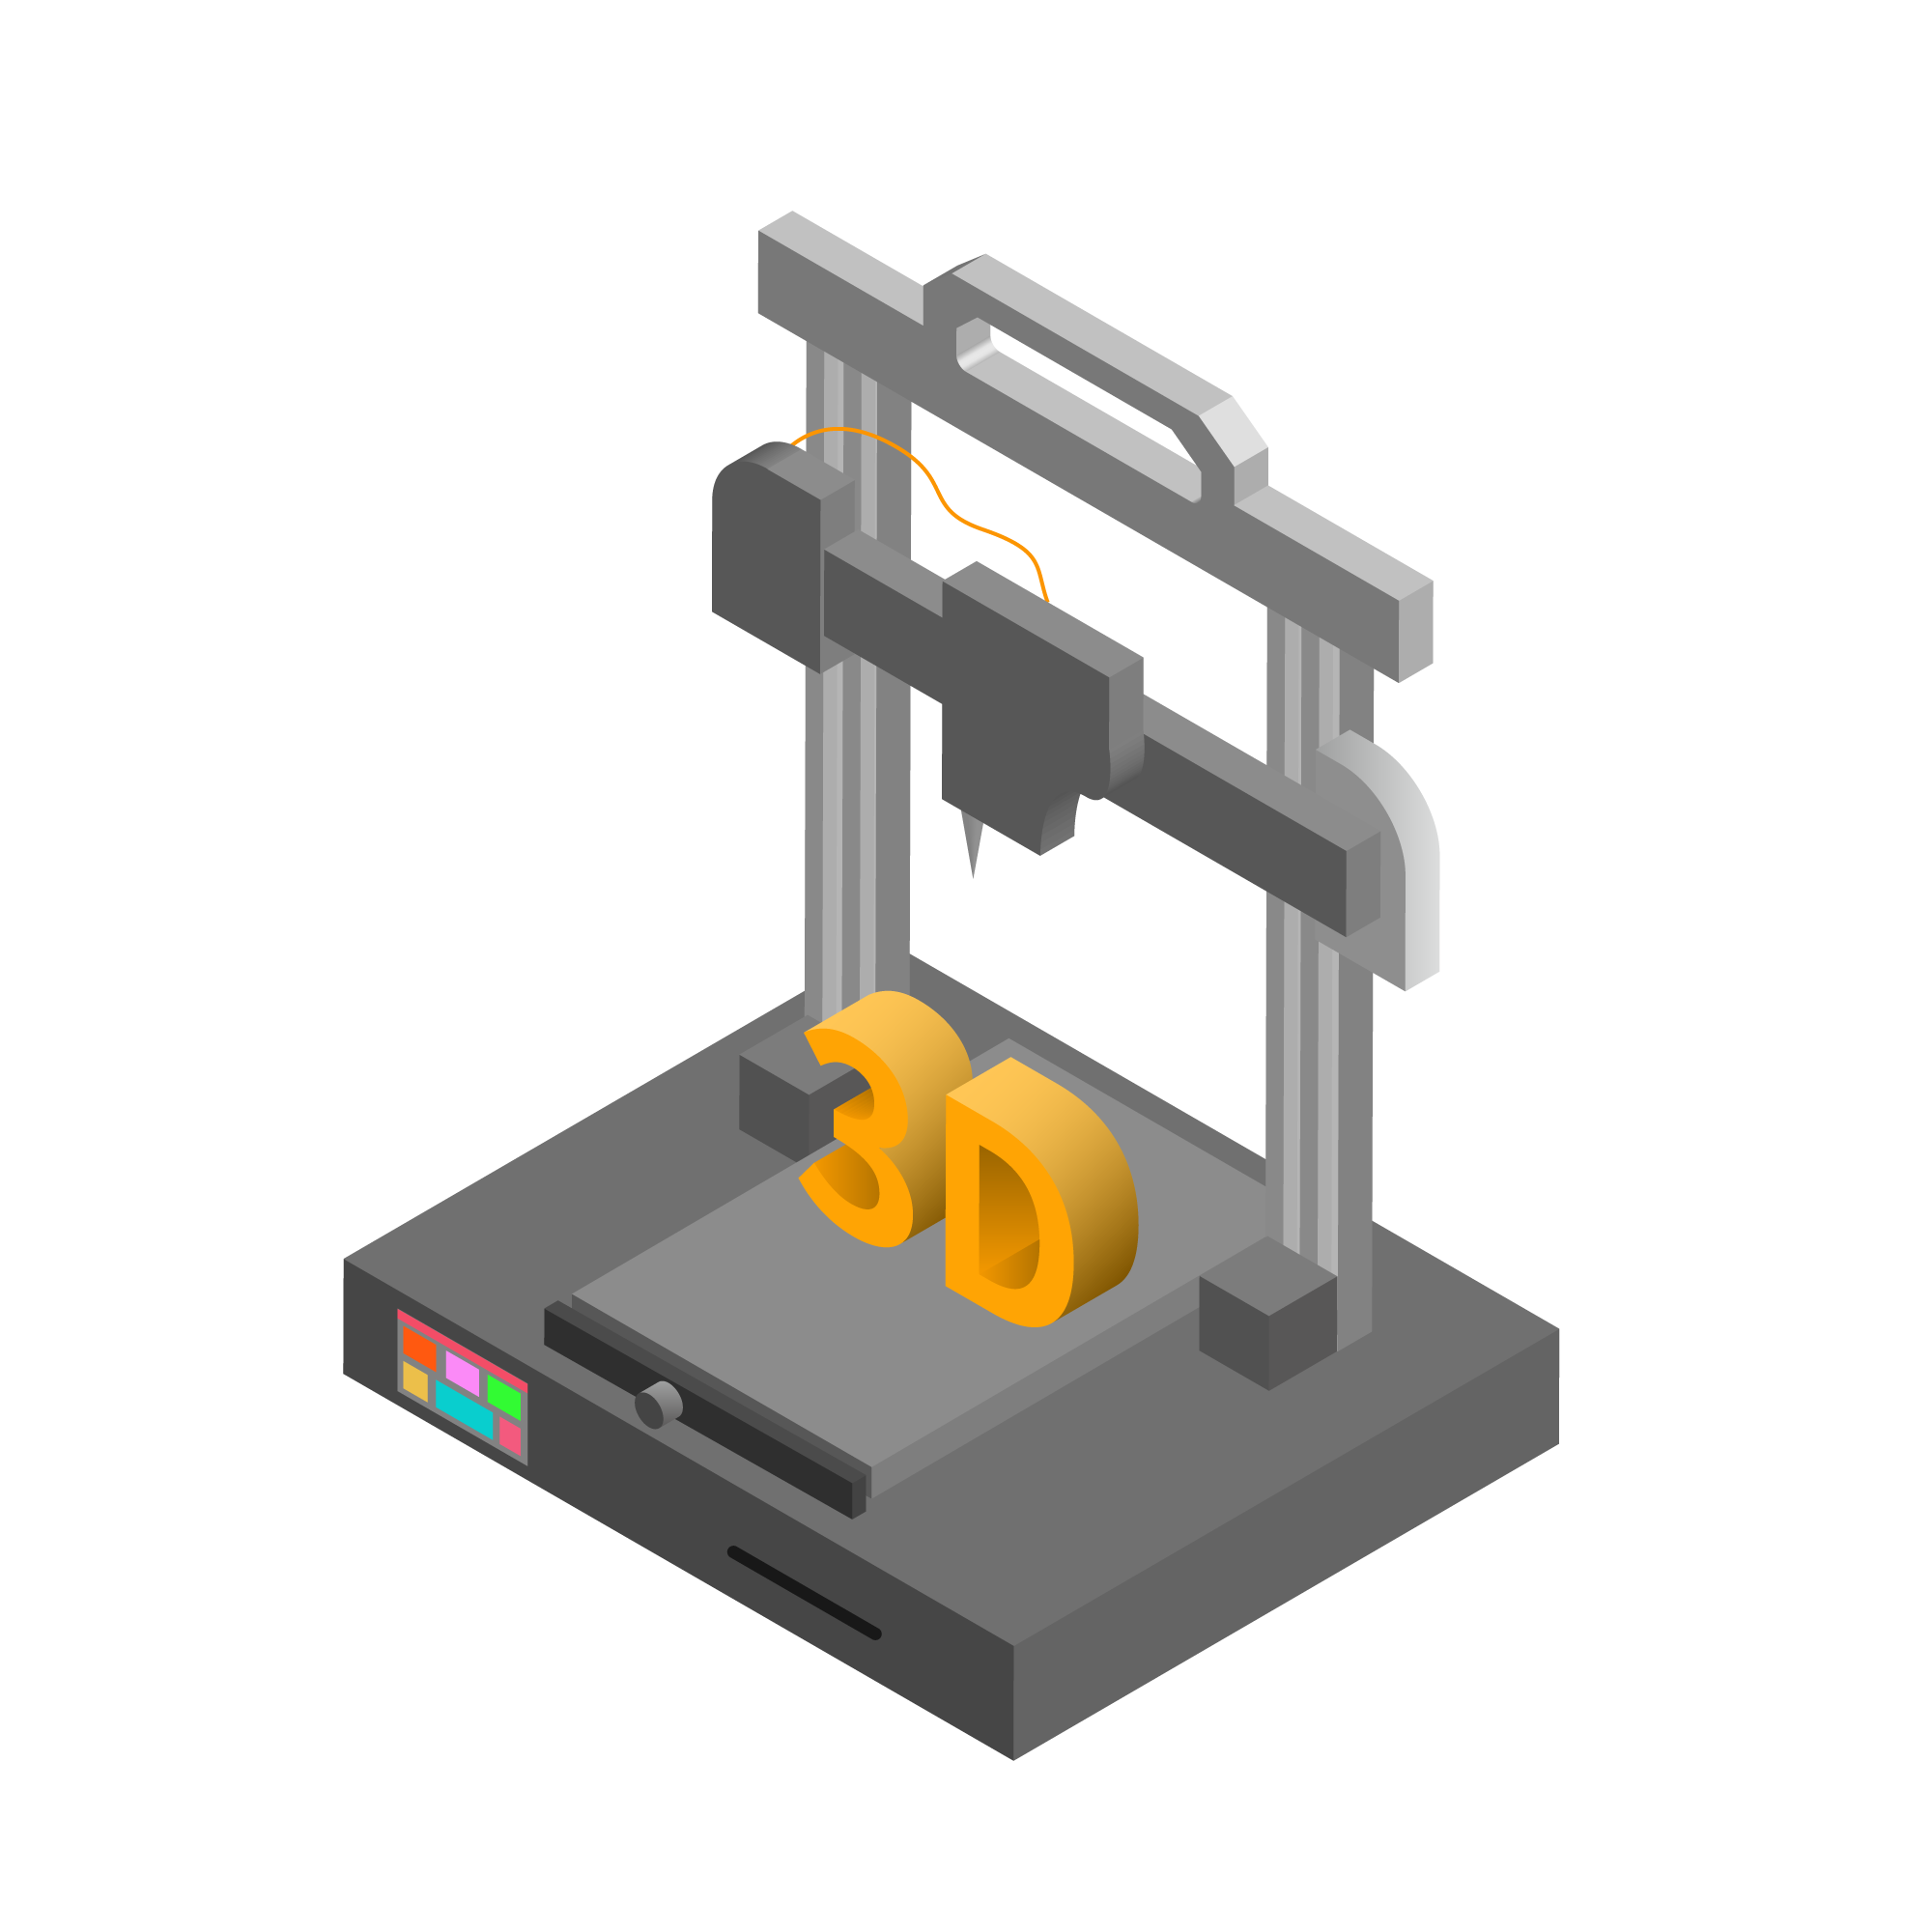 3D打印髋臼杯产品注册技术审查指导原则